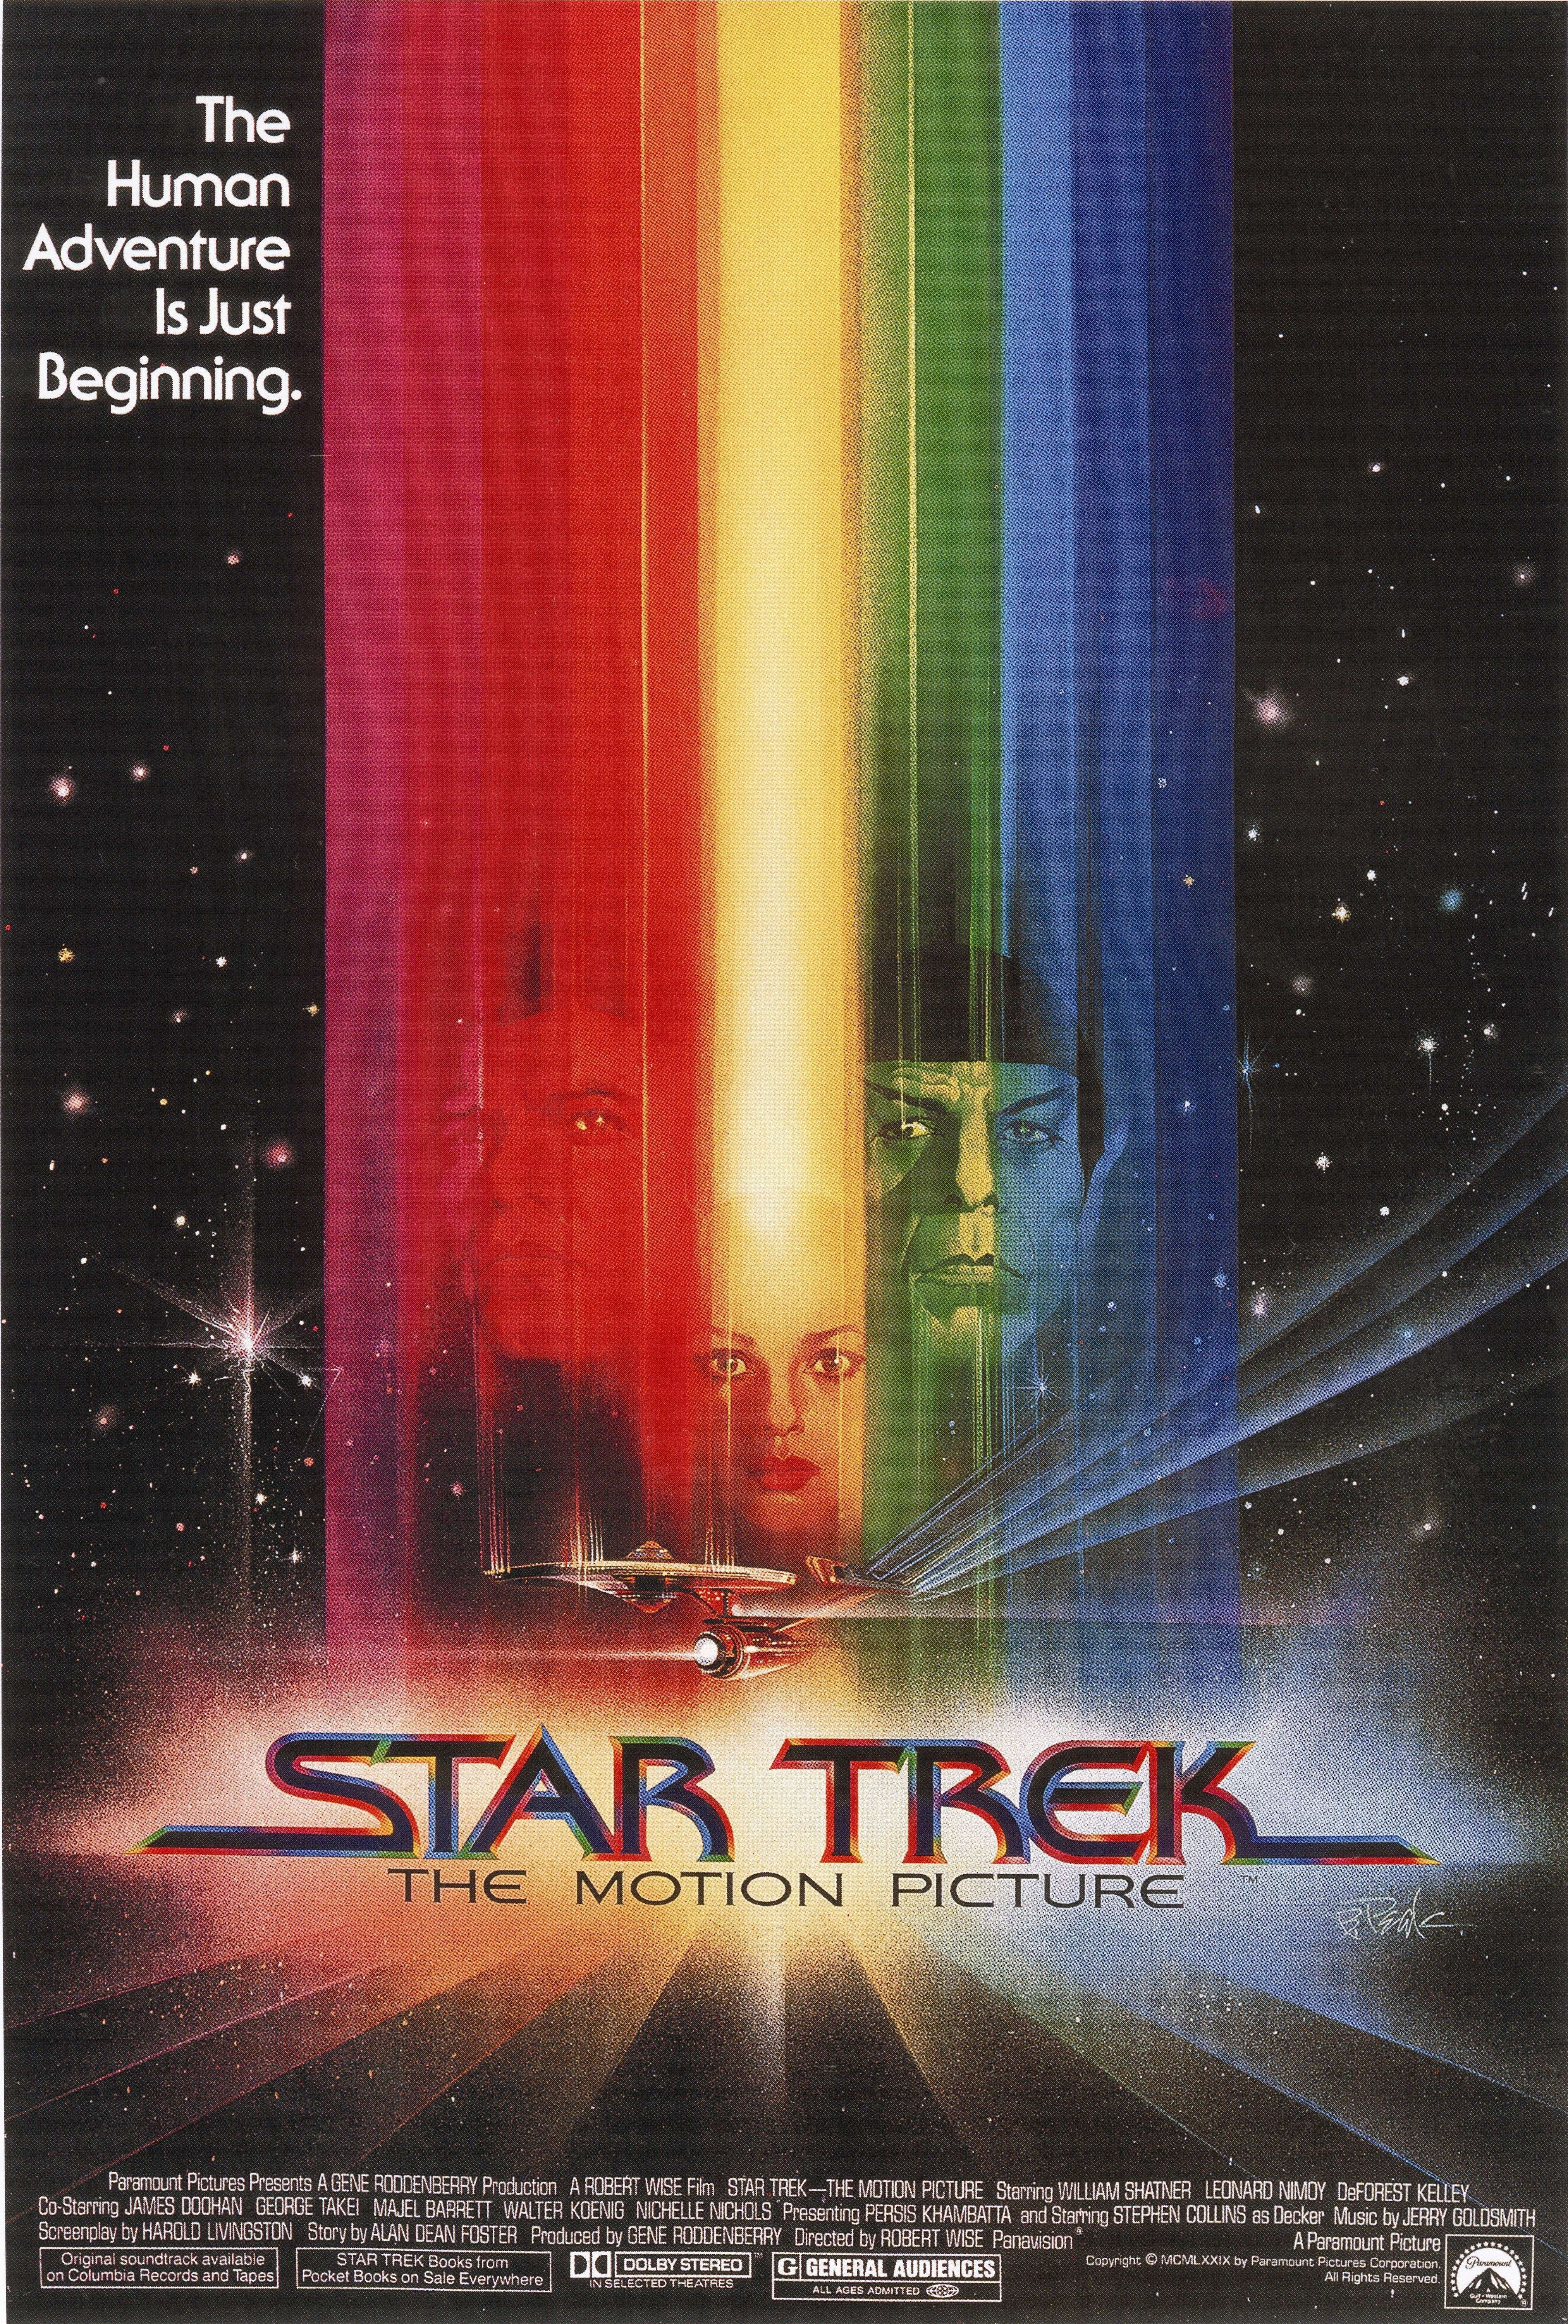 Star Trek film series - Wikipedia